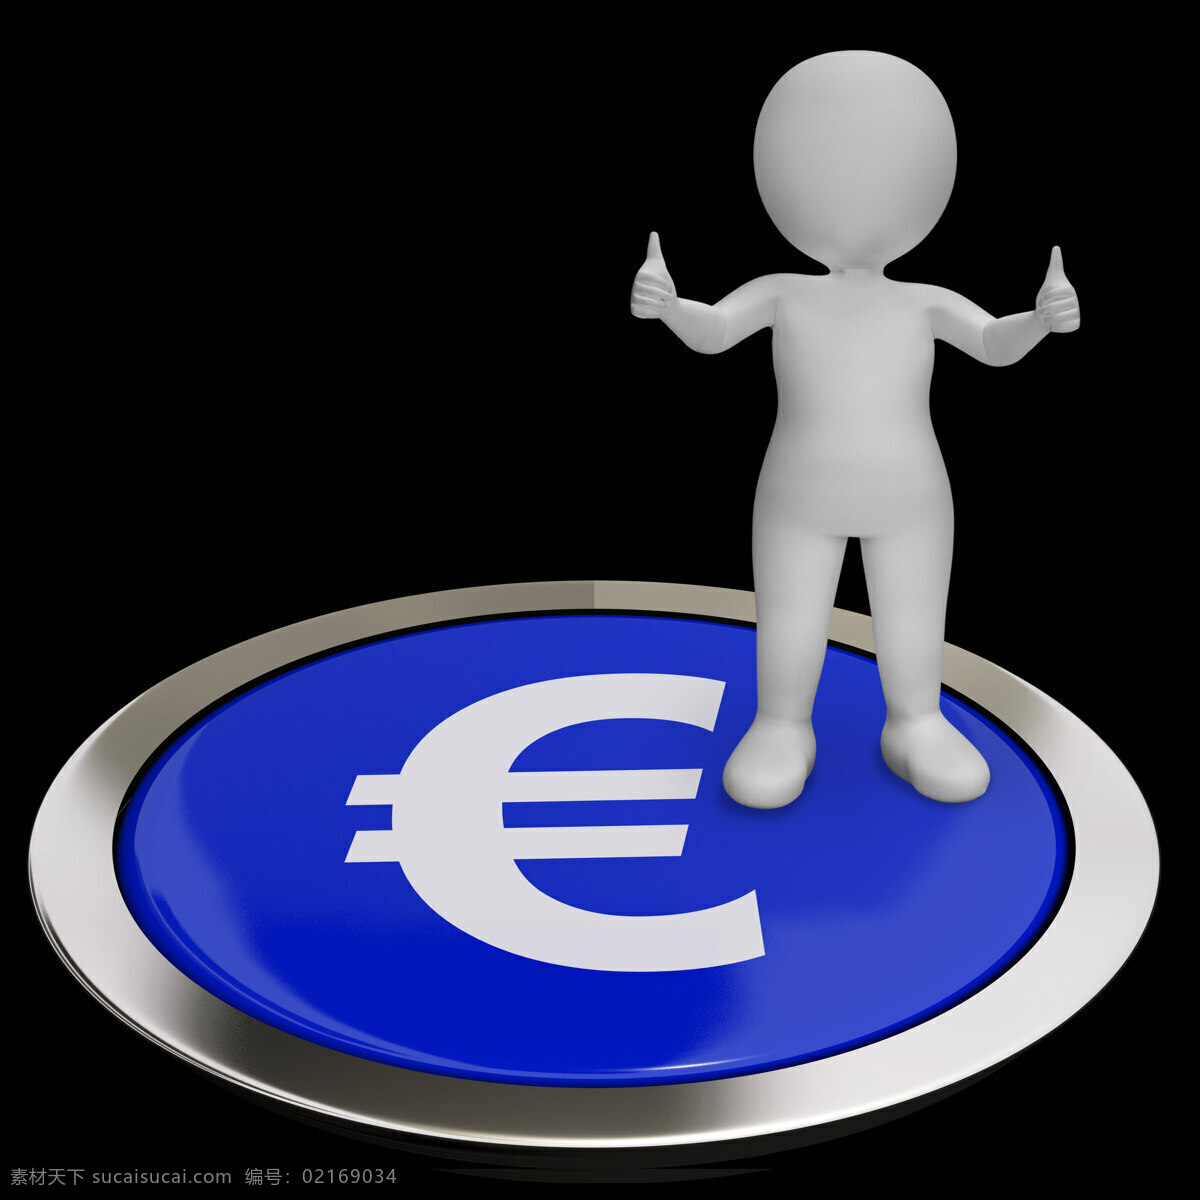 欧元 符号 按钮 显示 资金 投资 商务金融